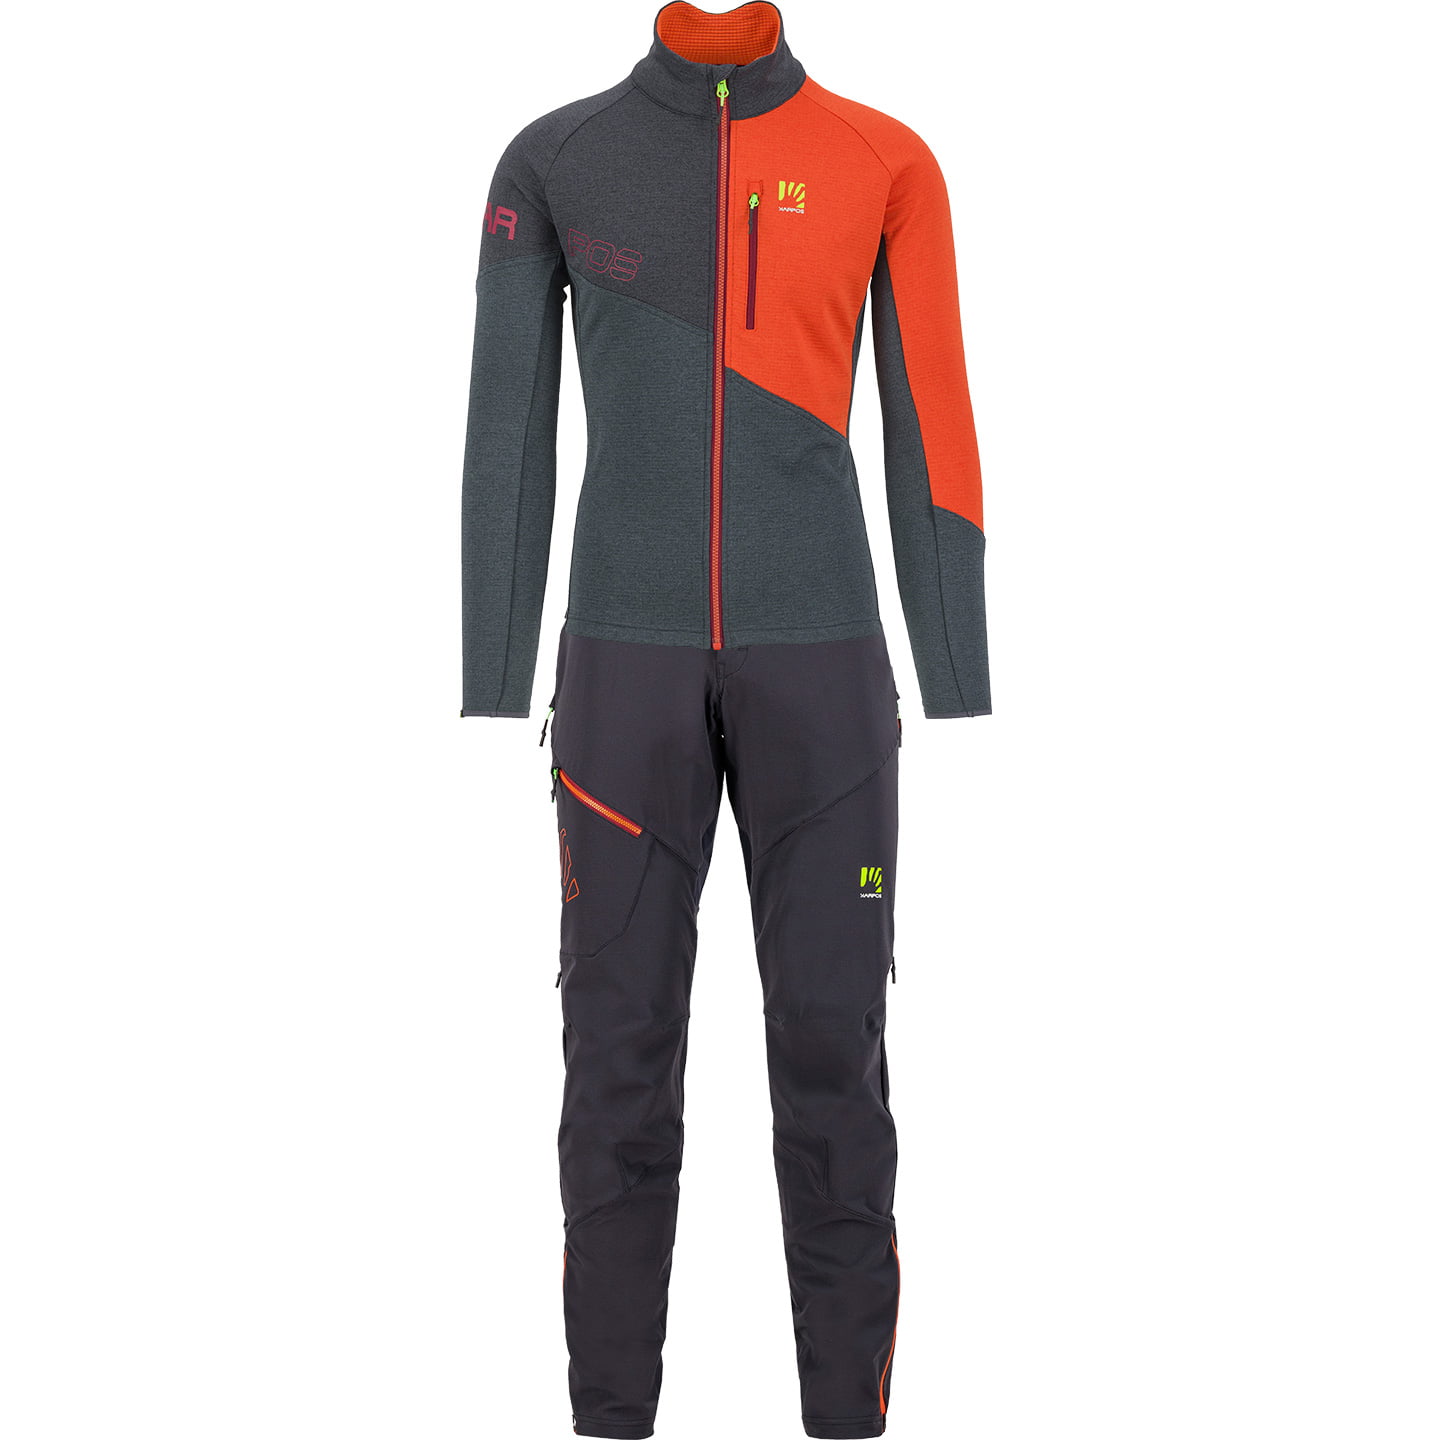 KARPOS Val Viola Fleece Set (winter jacket + cycling tights) Set (2 pieces), for men